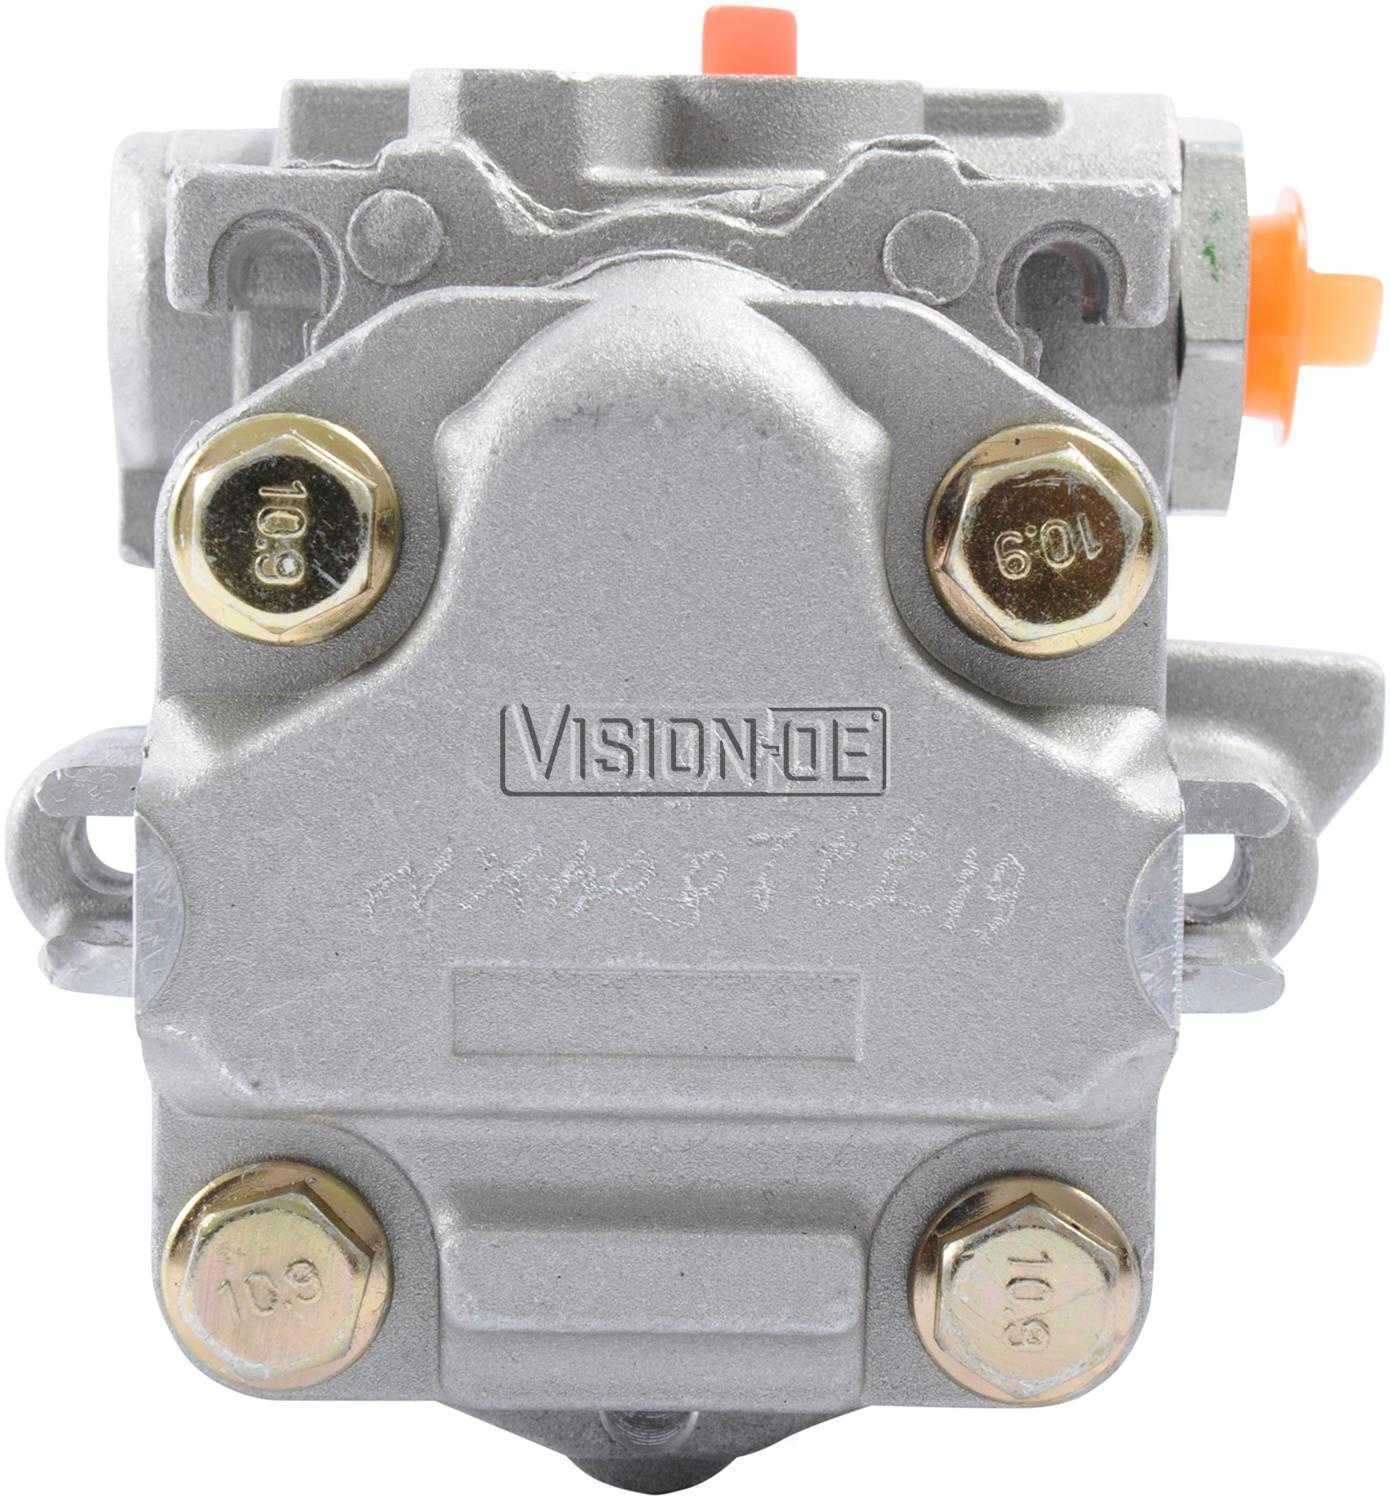 VISION-OE - New Power Steering Pump - VOE N730-0117